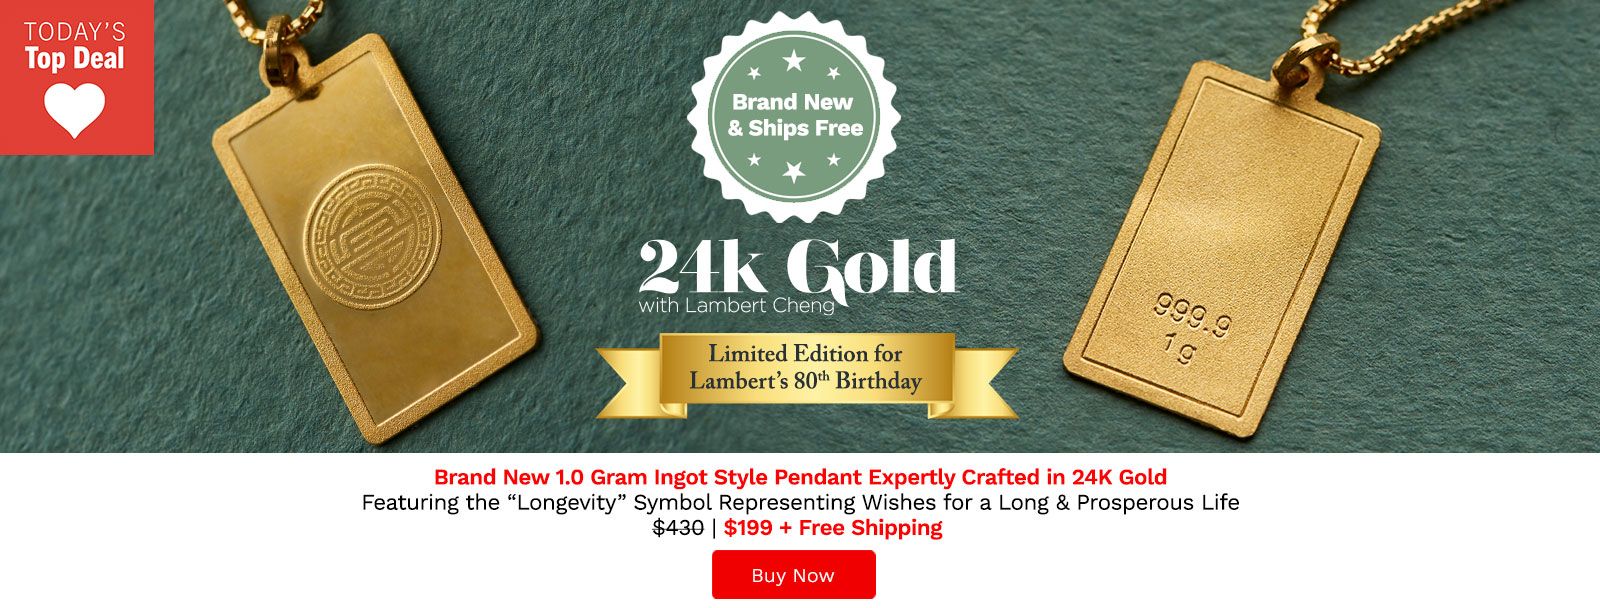 212-361 Lambert Cheng 24K Gold 1.0 Gram Longevity Ingot Style Pendant